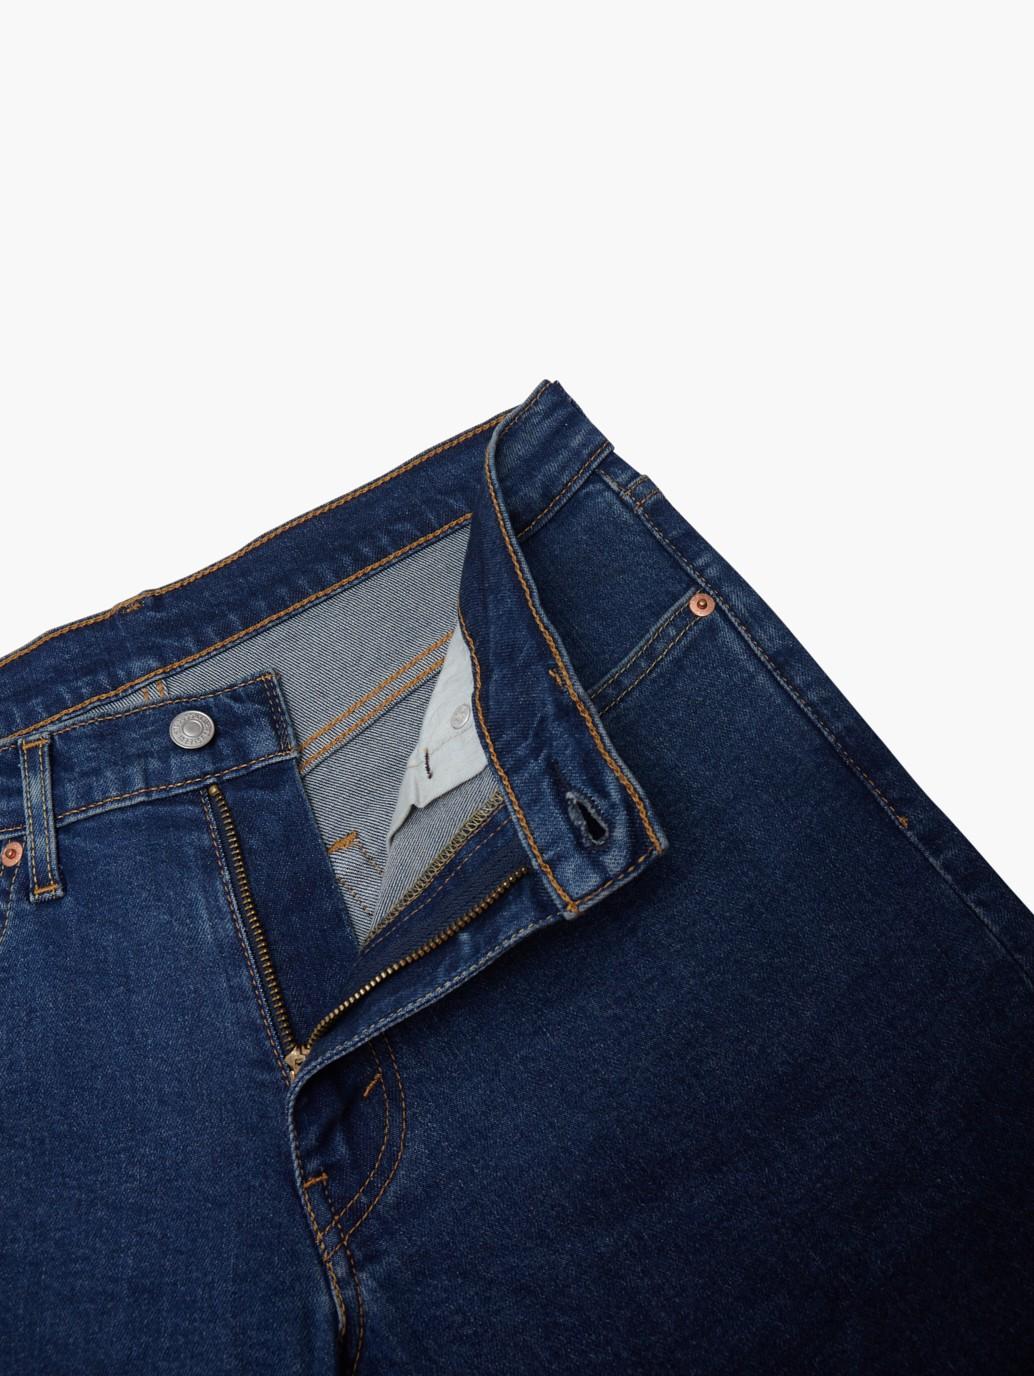 Buy Levi's® Men's 511™ Slim Fit Jeans | Levi’s® Official Online Store MY